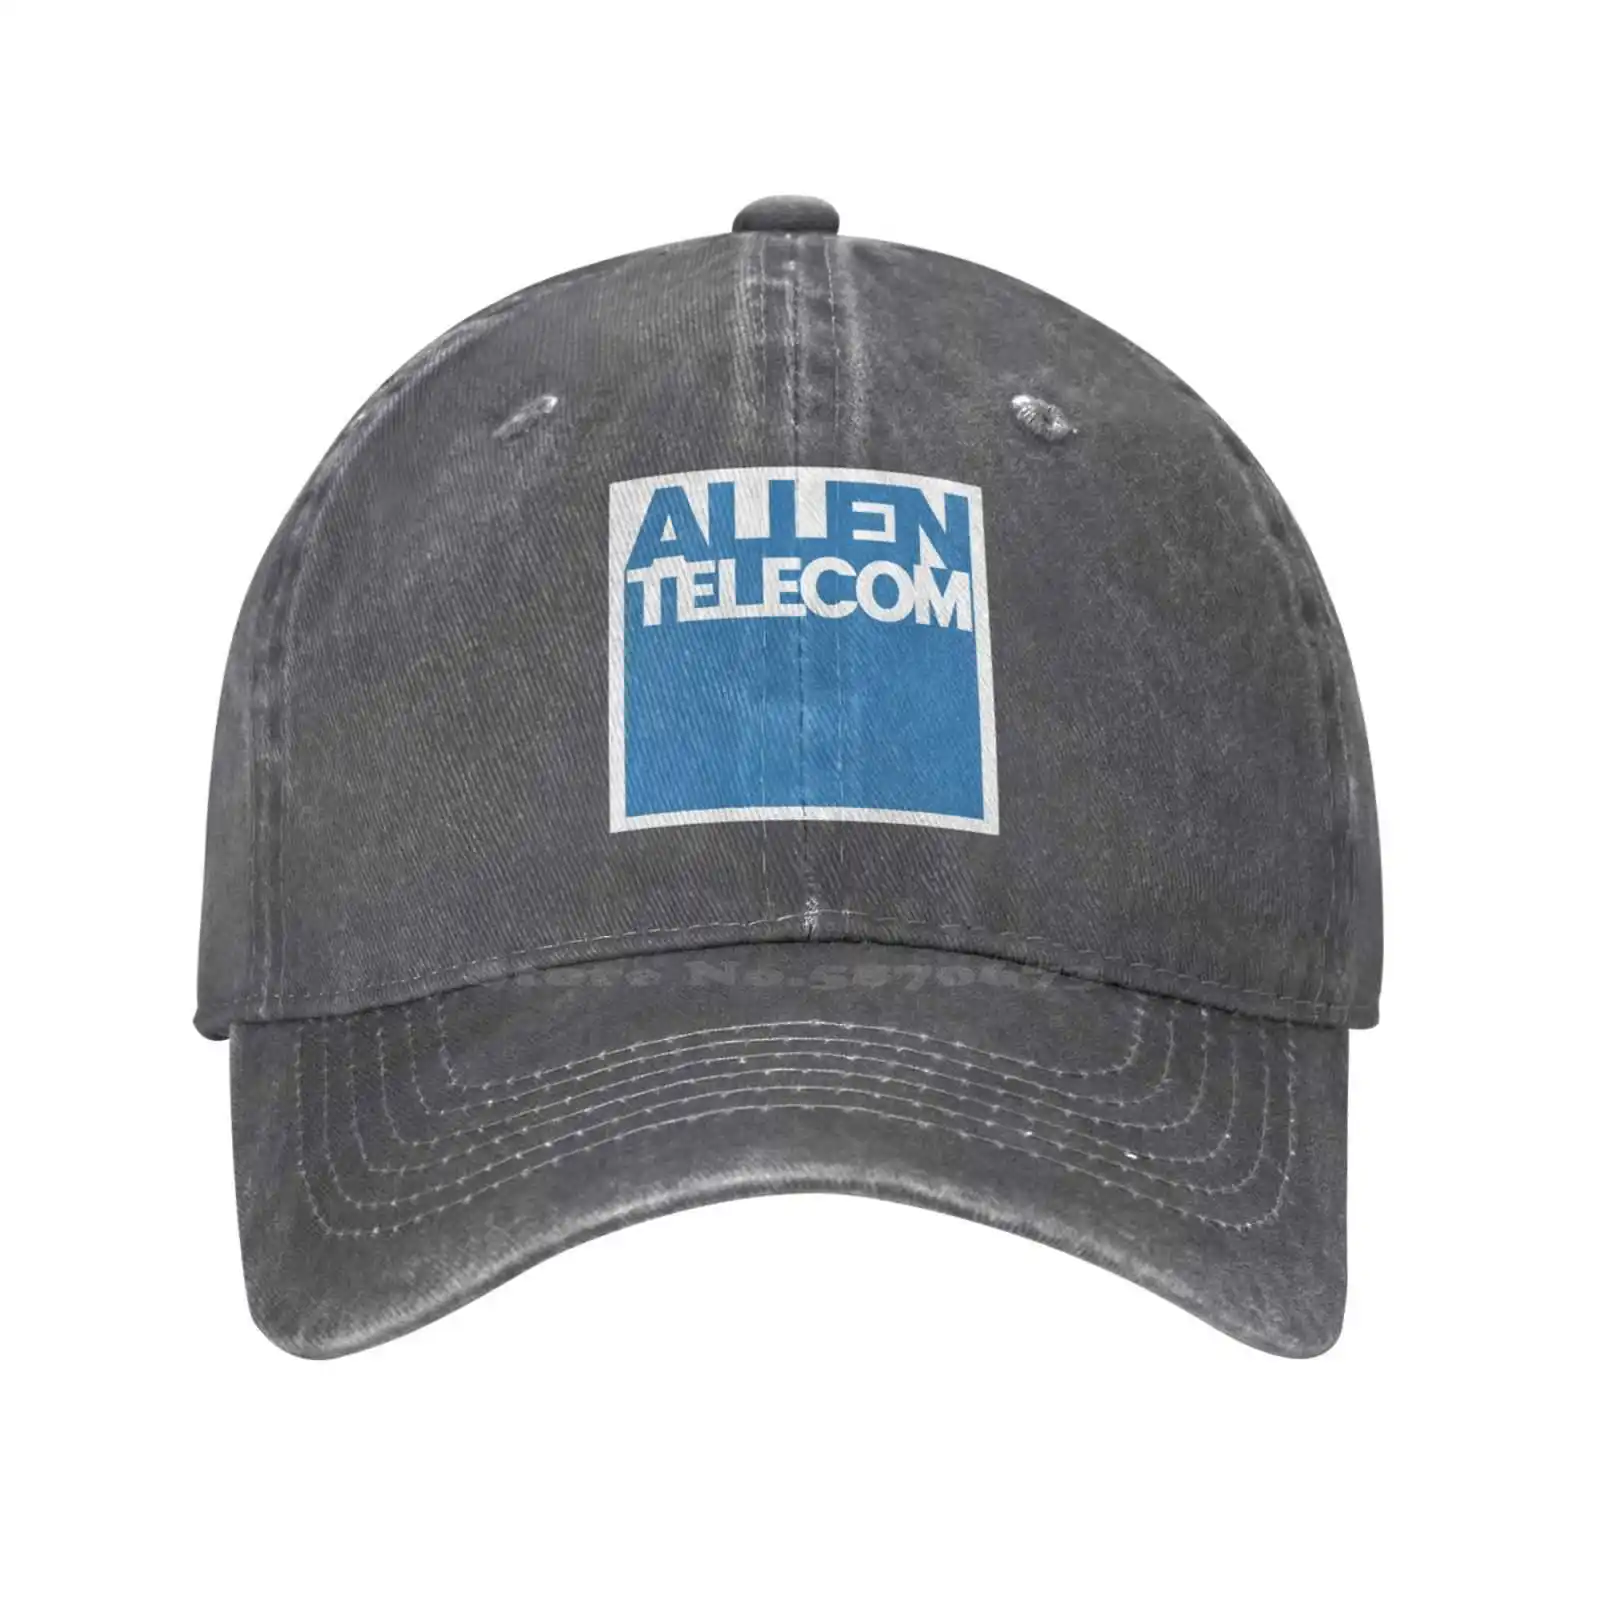 Аллен качественный логотип Телеком моды джинсовая шапка вязаная шляпа бейсболка 0